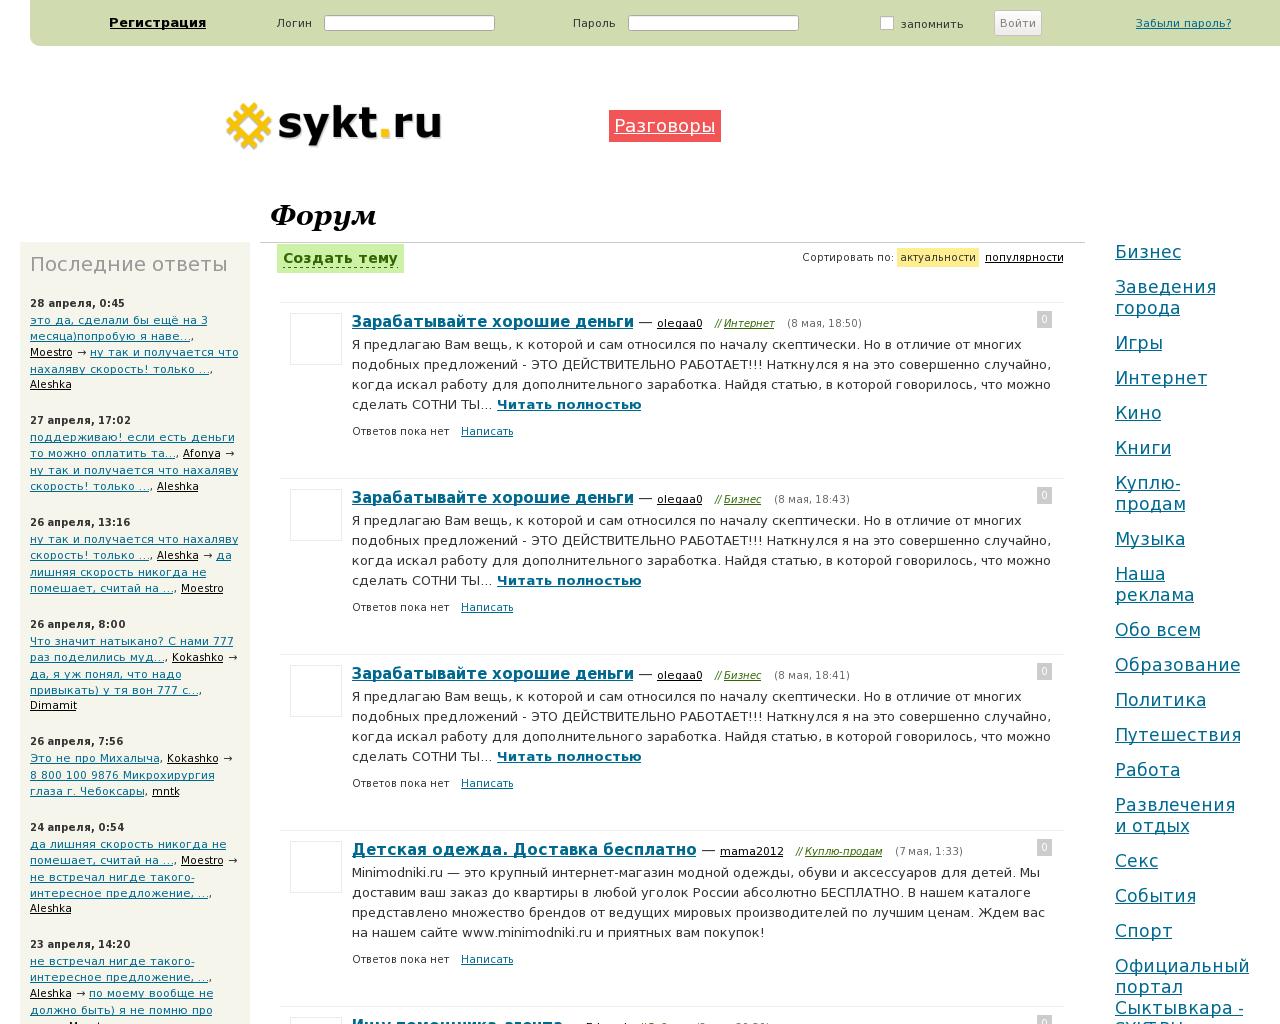 Изображение сайта sykt.ru в разрешении 1280x1024